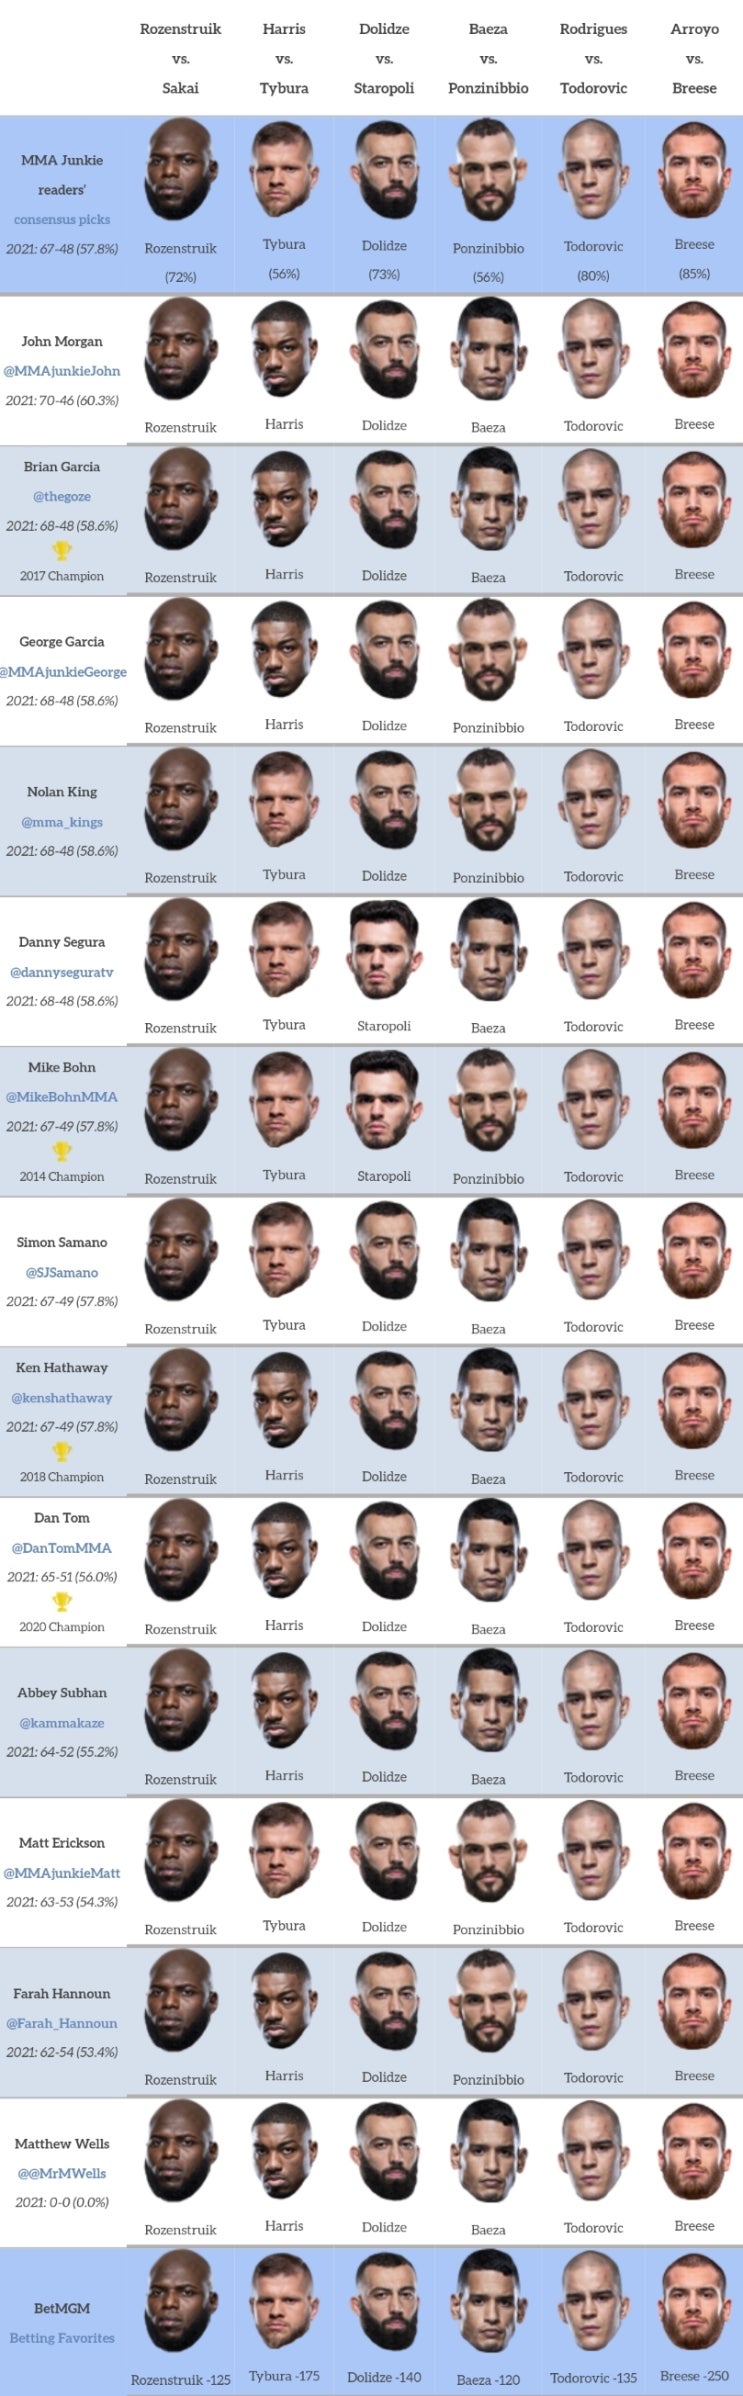 UFC 베가스 28: 로젠스트루이크 vs 사카이 프리뷰(미디어 예상 및 배당률)